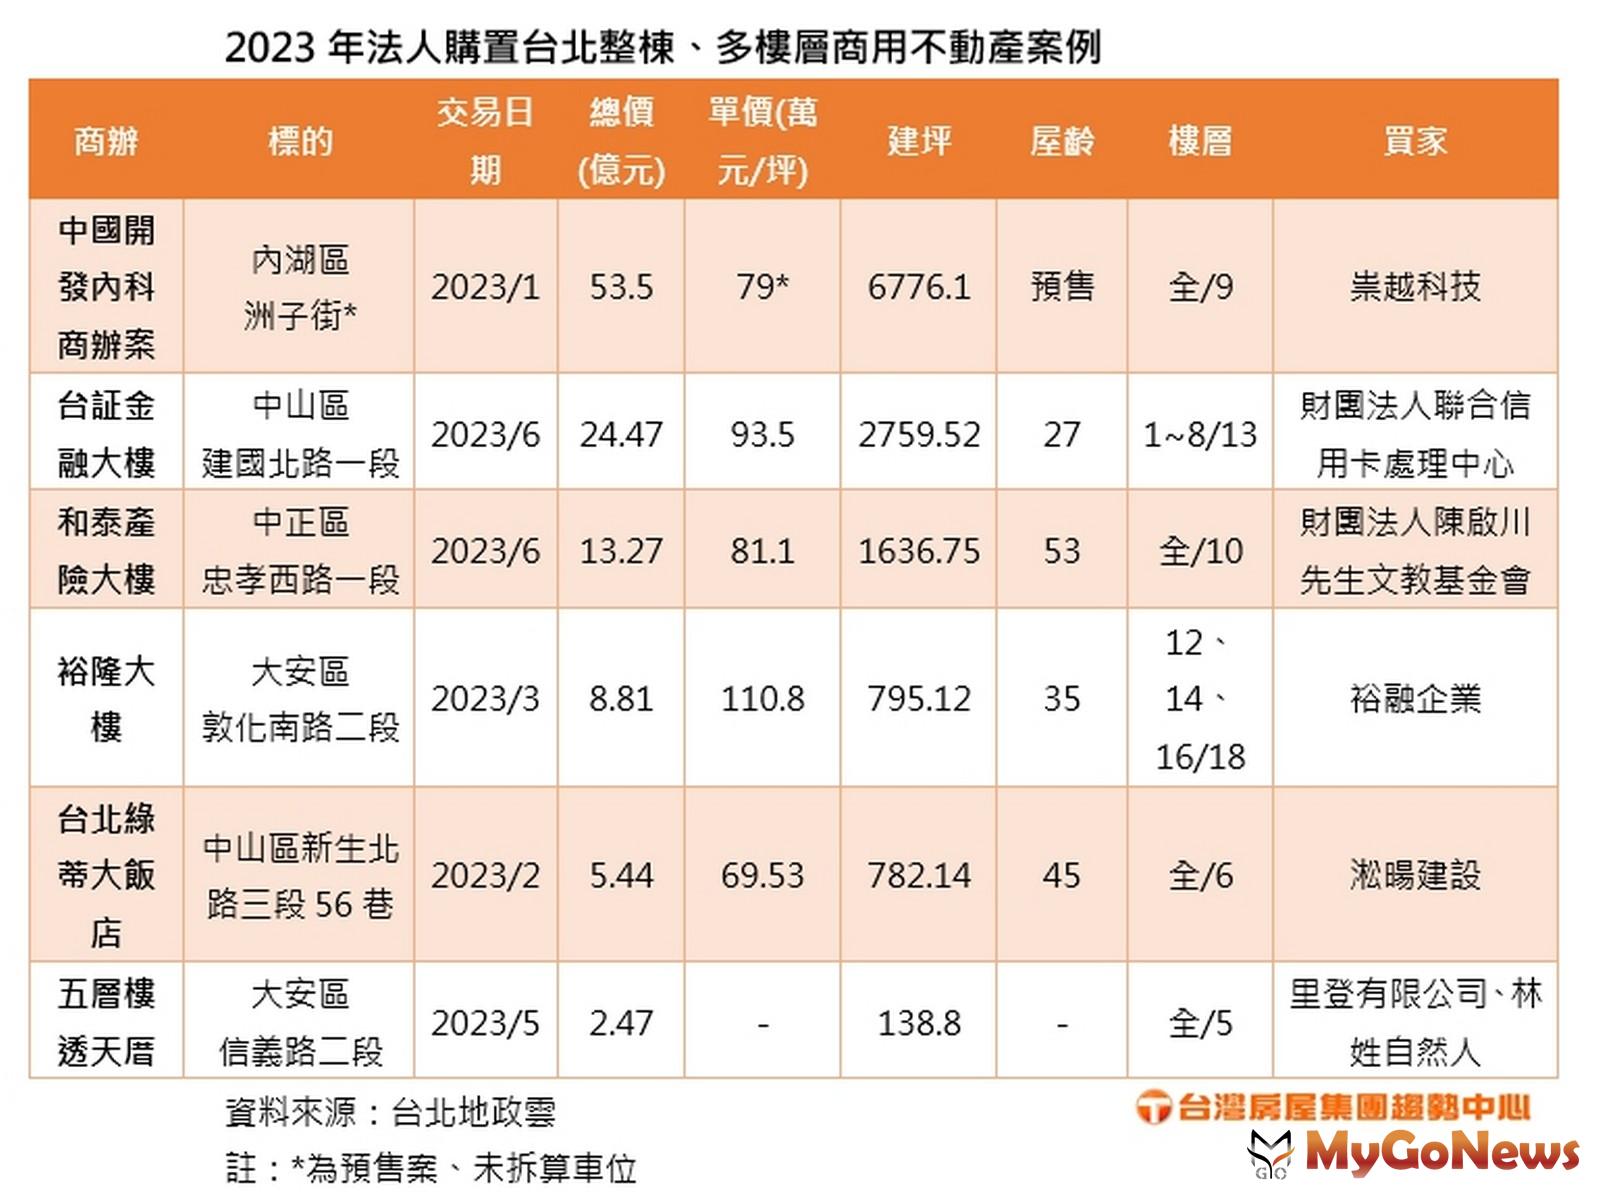 2023年法人購置台北整棟、多樓層商用不動產案例(台灣房屋提供) MyGoNews房地產新聞 市場快訊